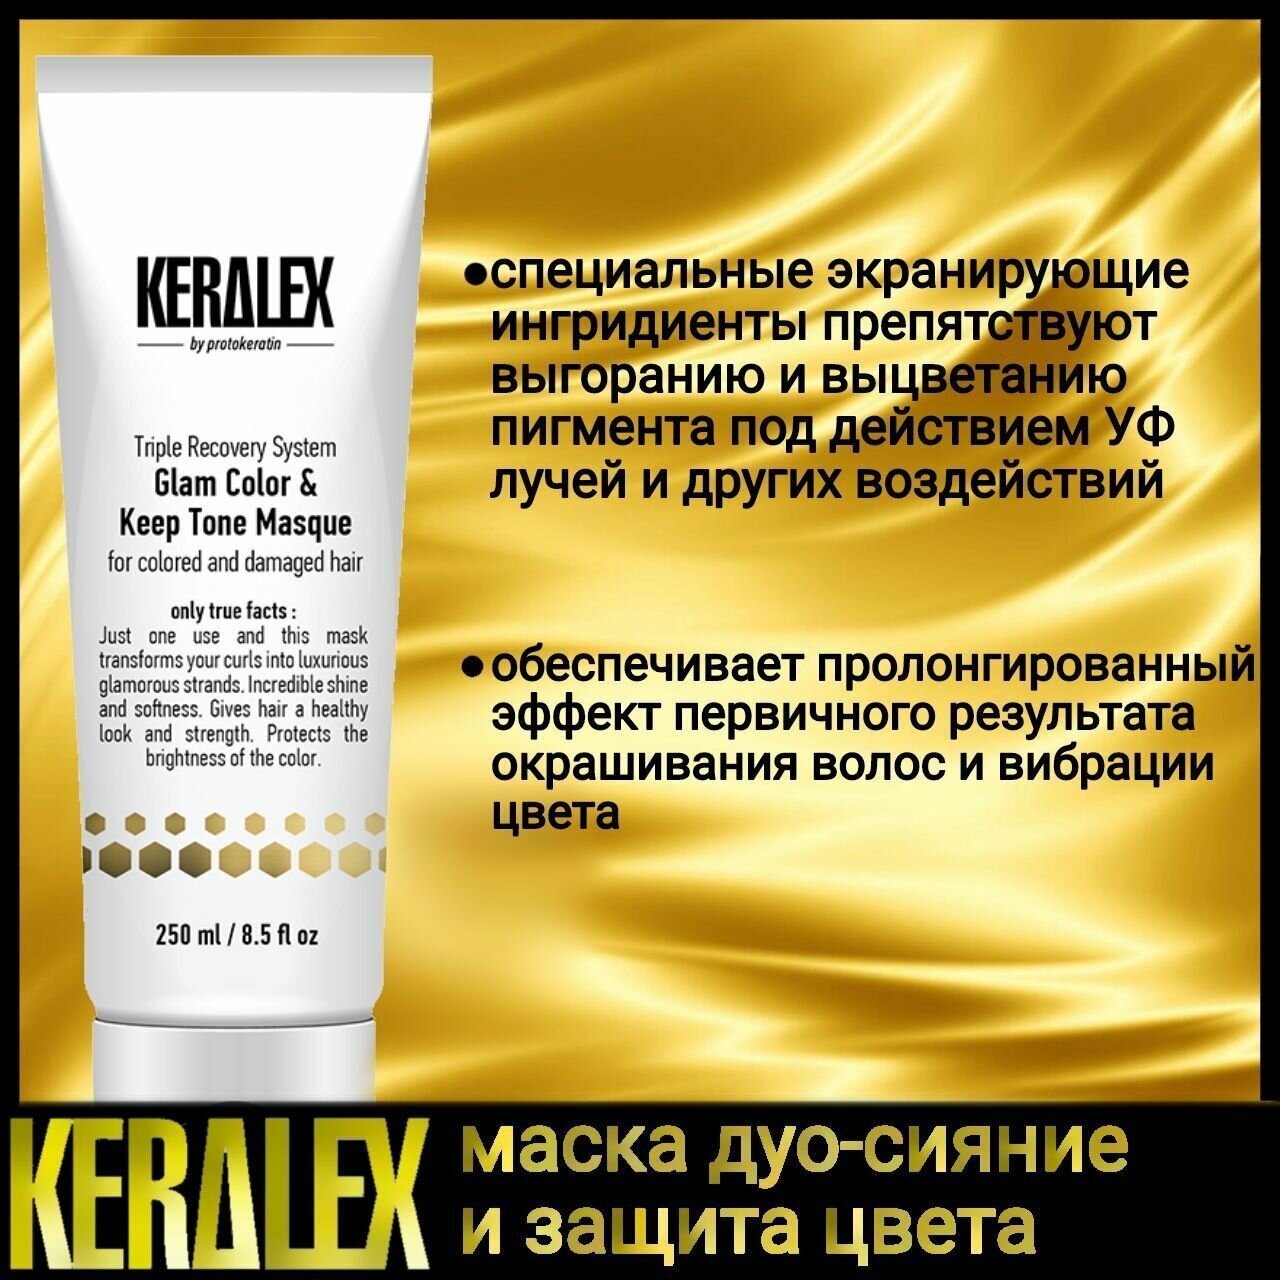 Маска KERALEX дуо-сияние и защита цвета, 250 ml PROTOKERATIN